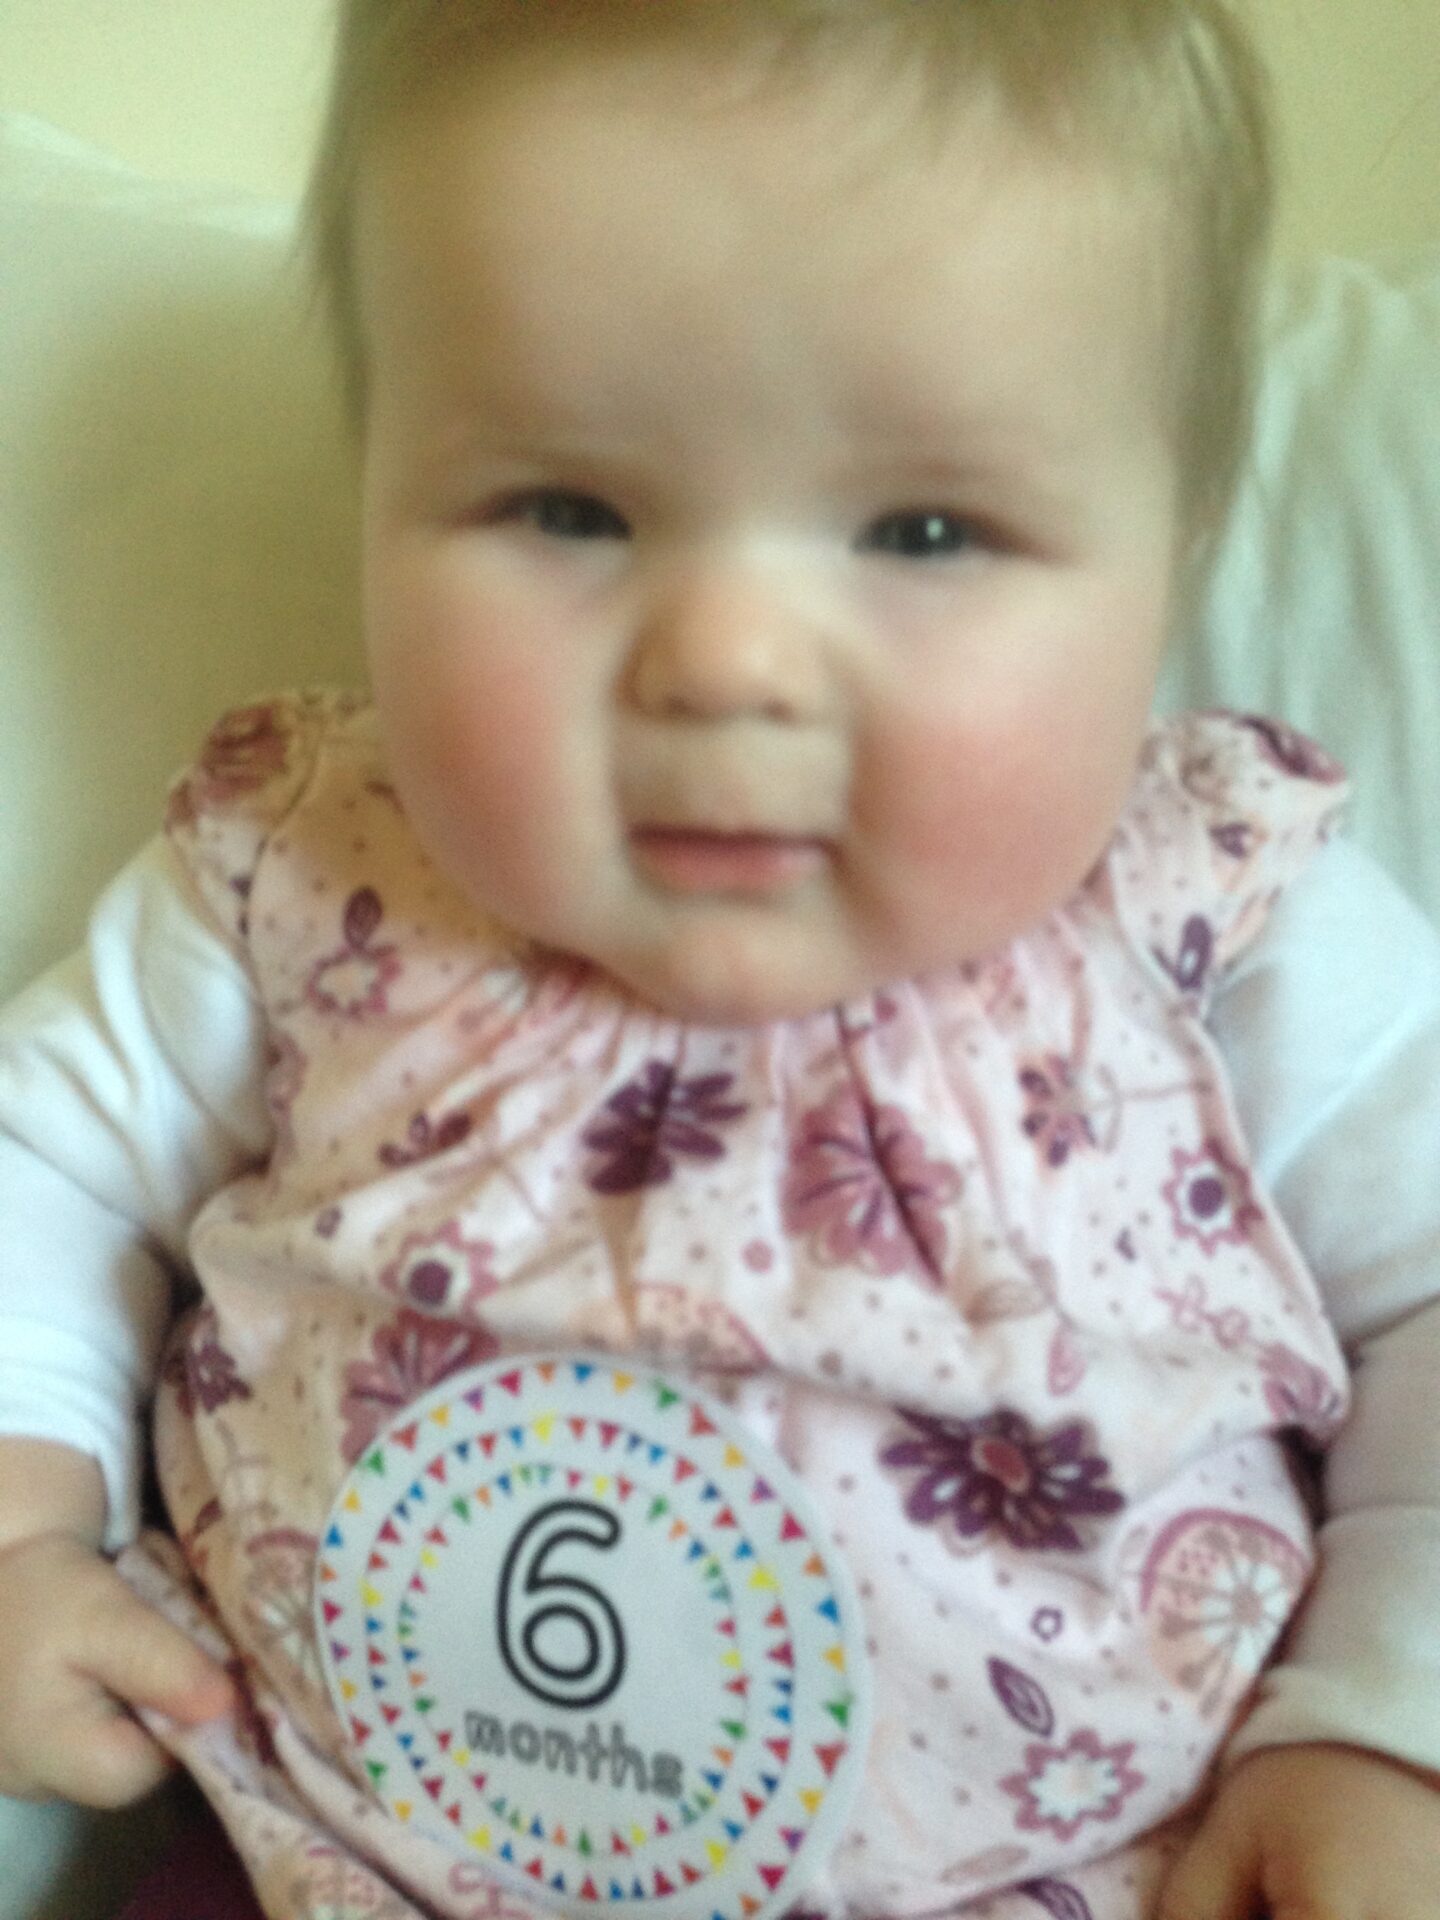 Dear Lottie Bella: Six months old